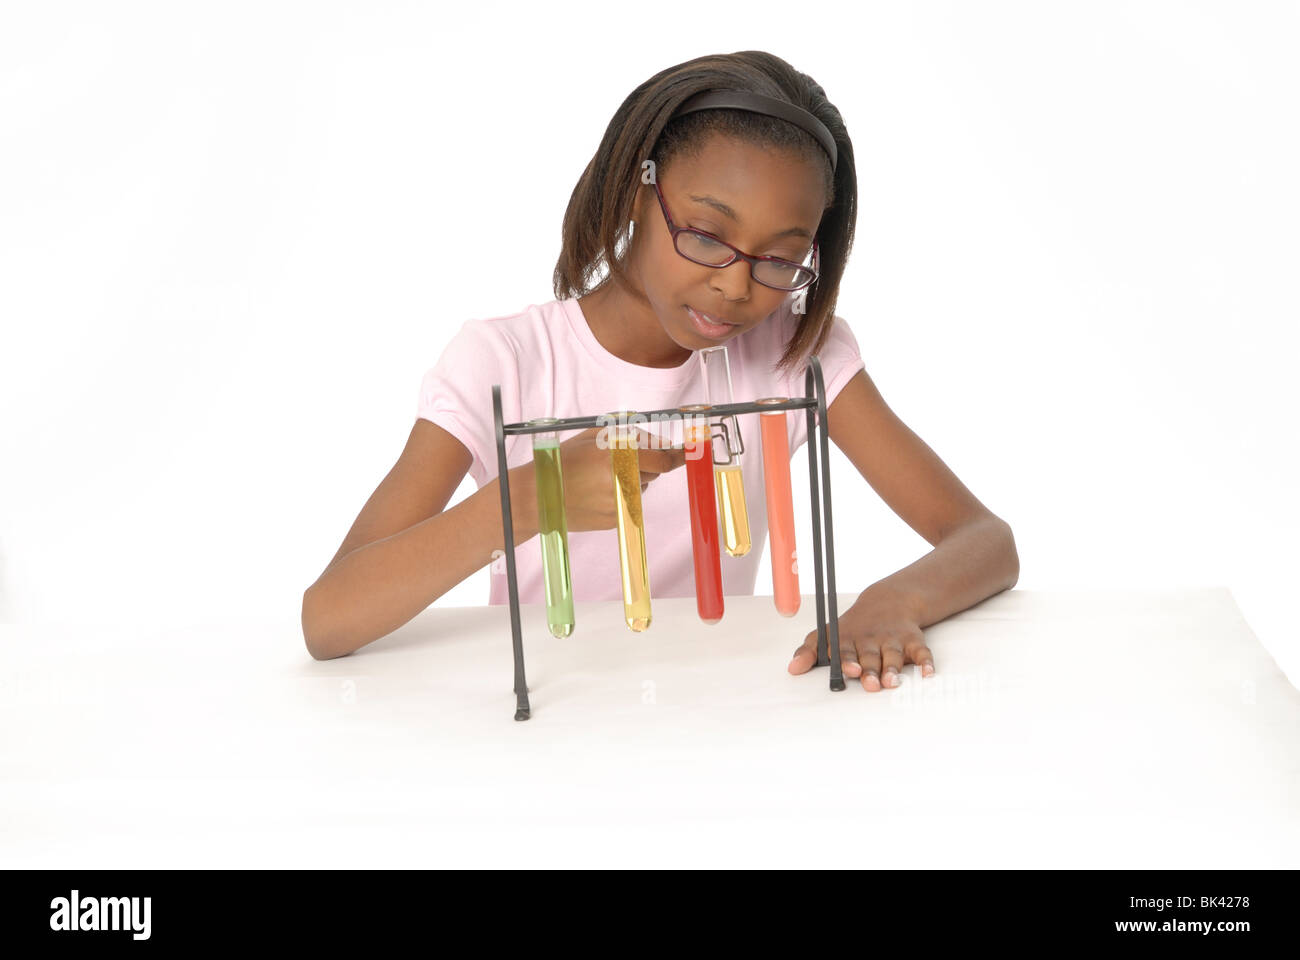 Zehn Jahre altes Mädchen, ein Student, eine wissenschaftliches Experiment mit Becher gefüllt mit bunten Flüssigkeit zu tun. Stockfoto